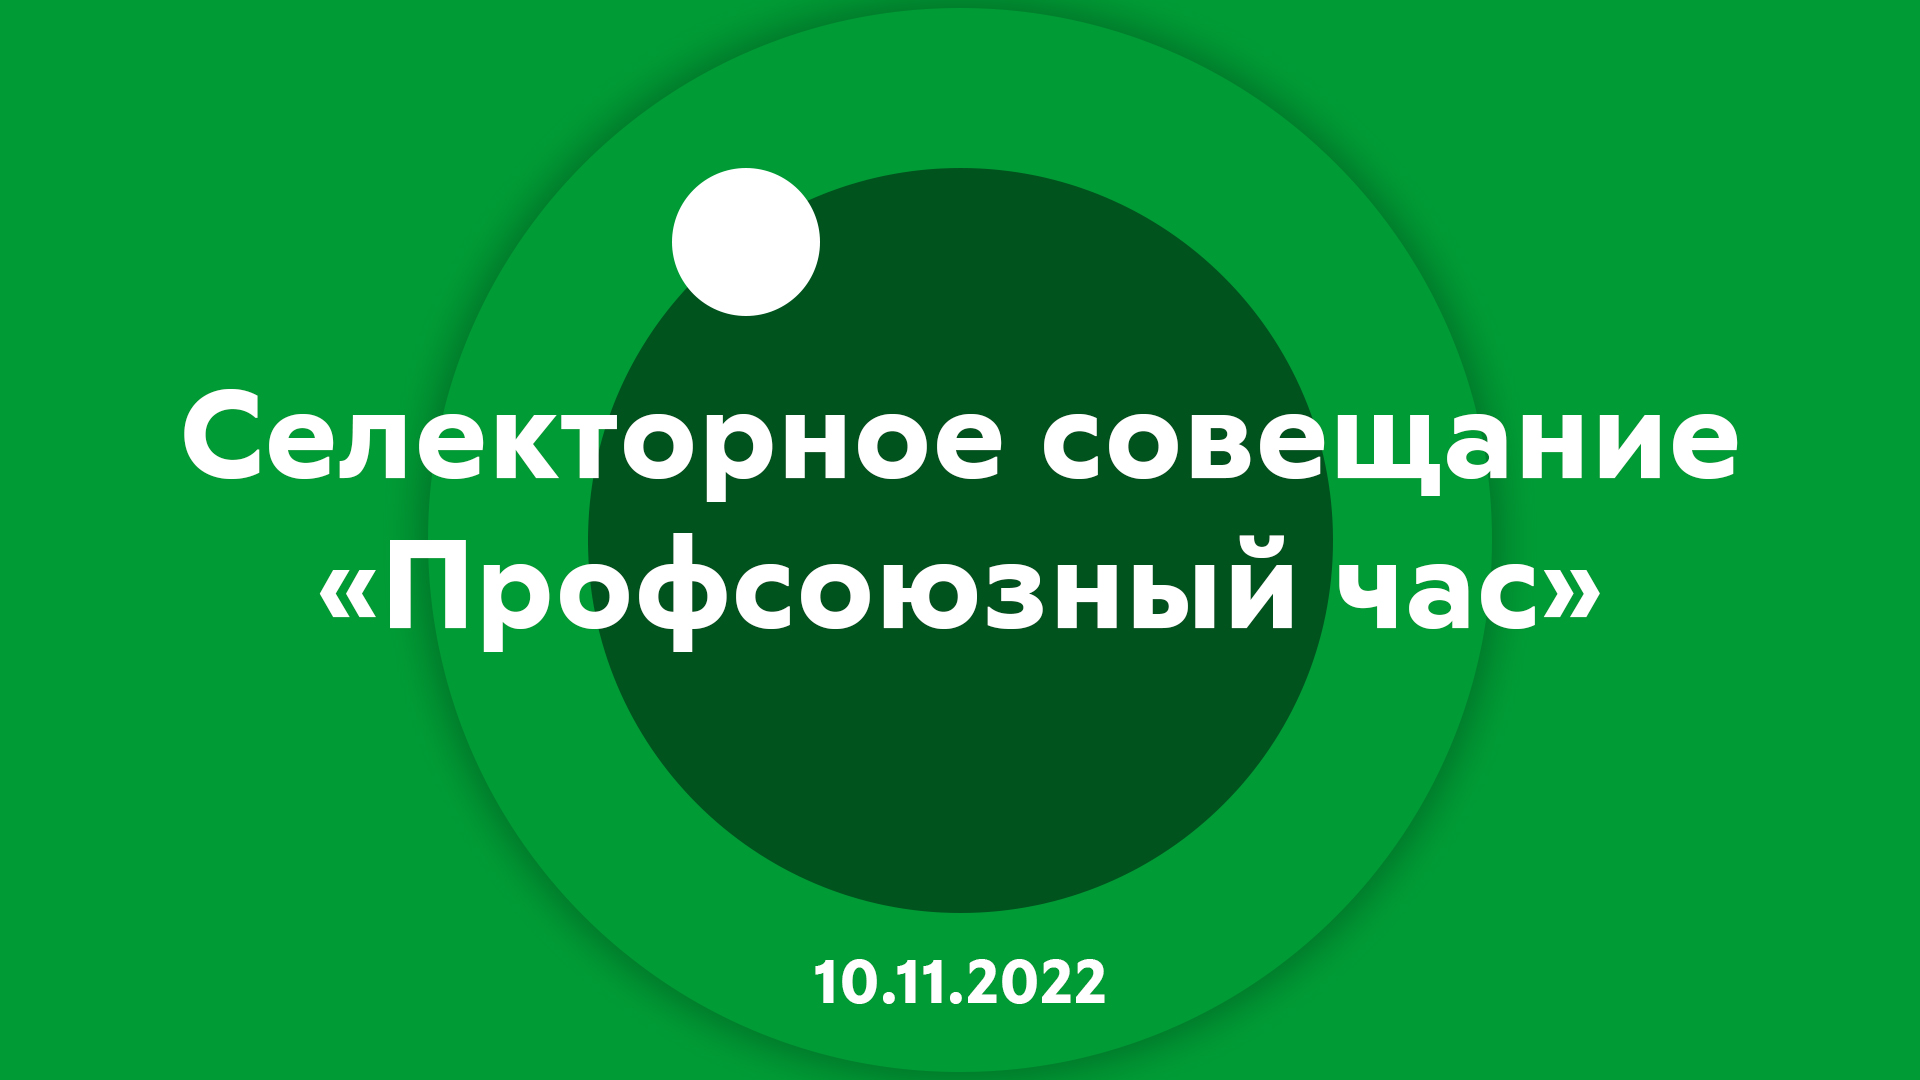 Селекторное совещание Профсоюзный час 10.11.2022